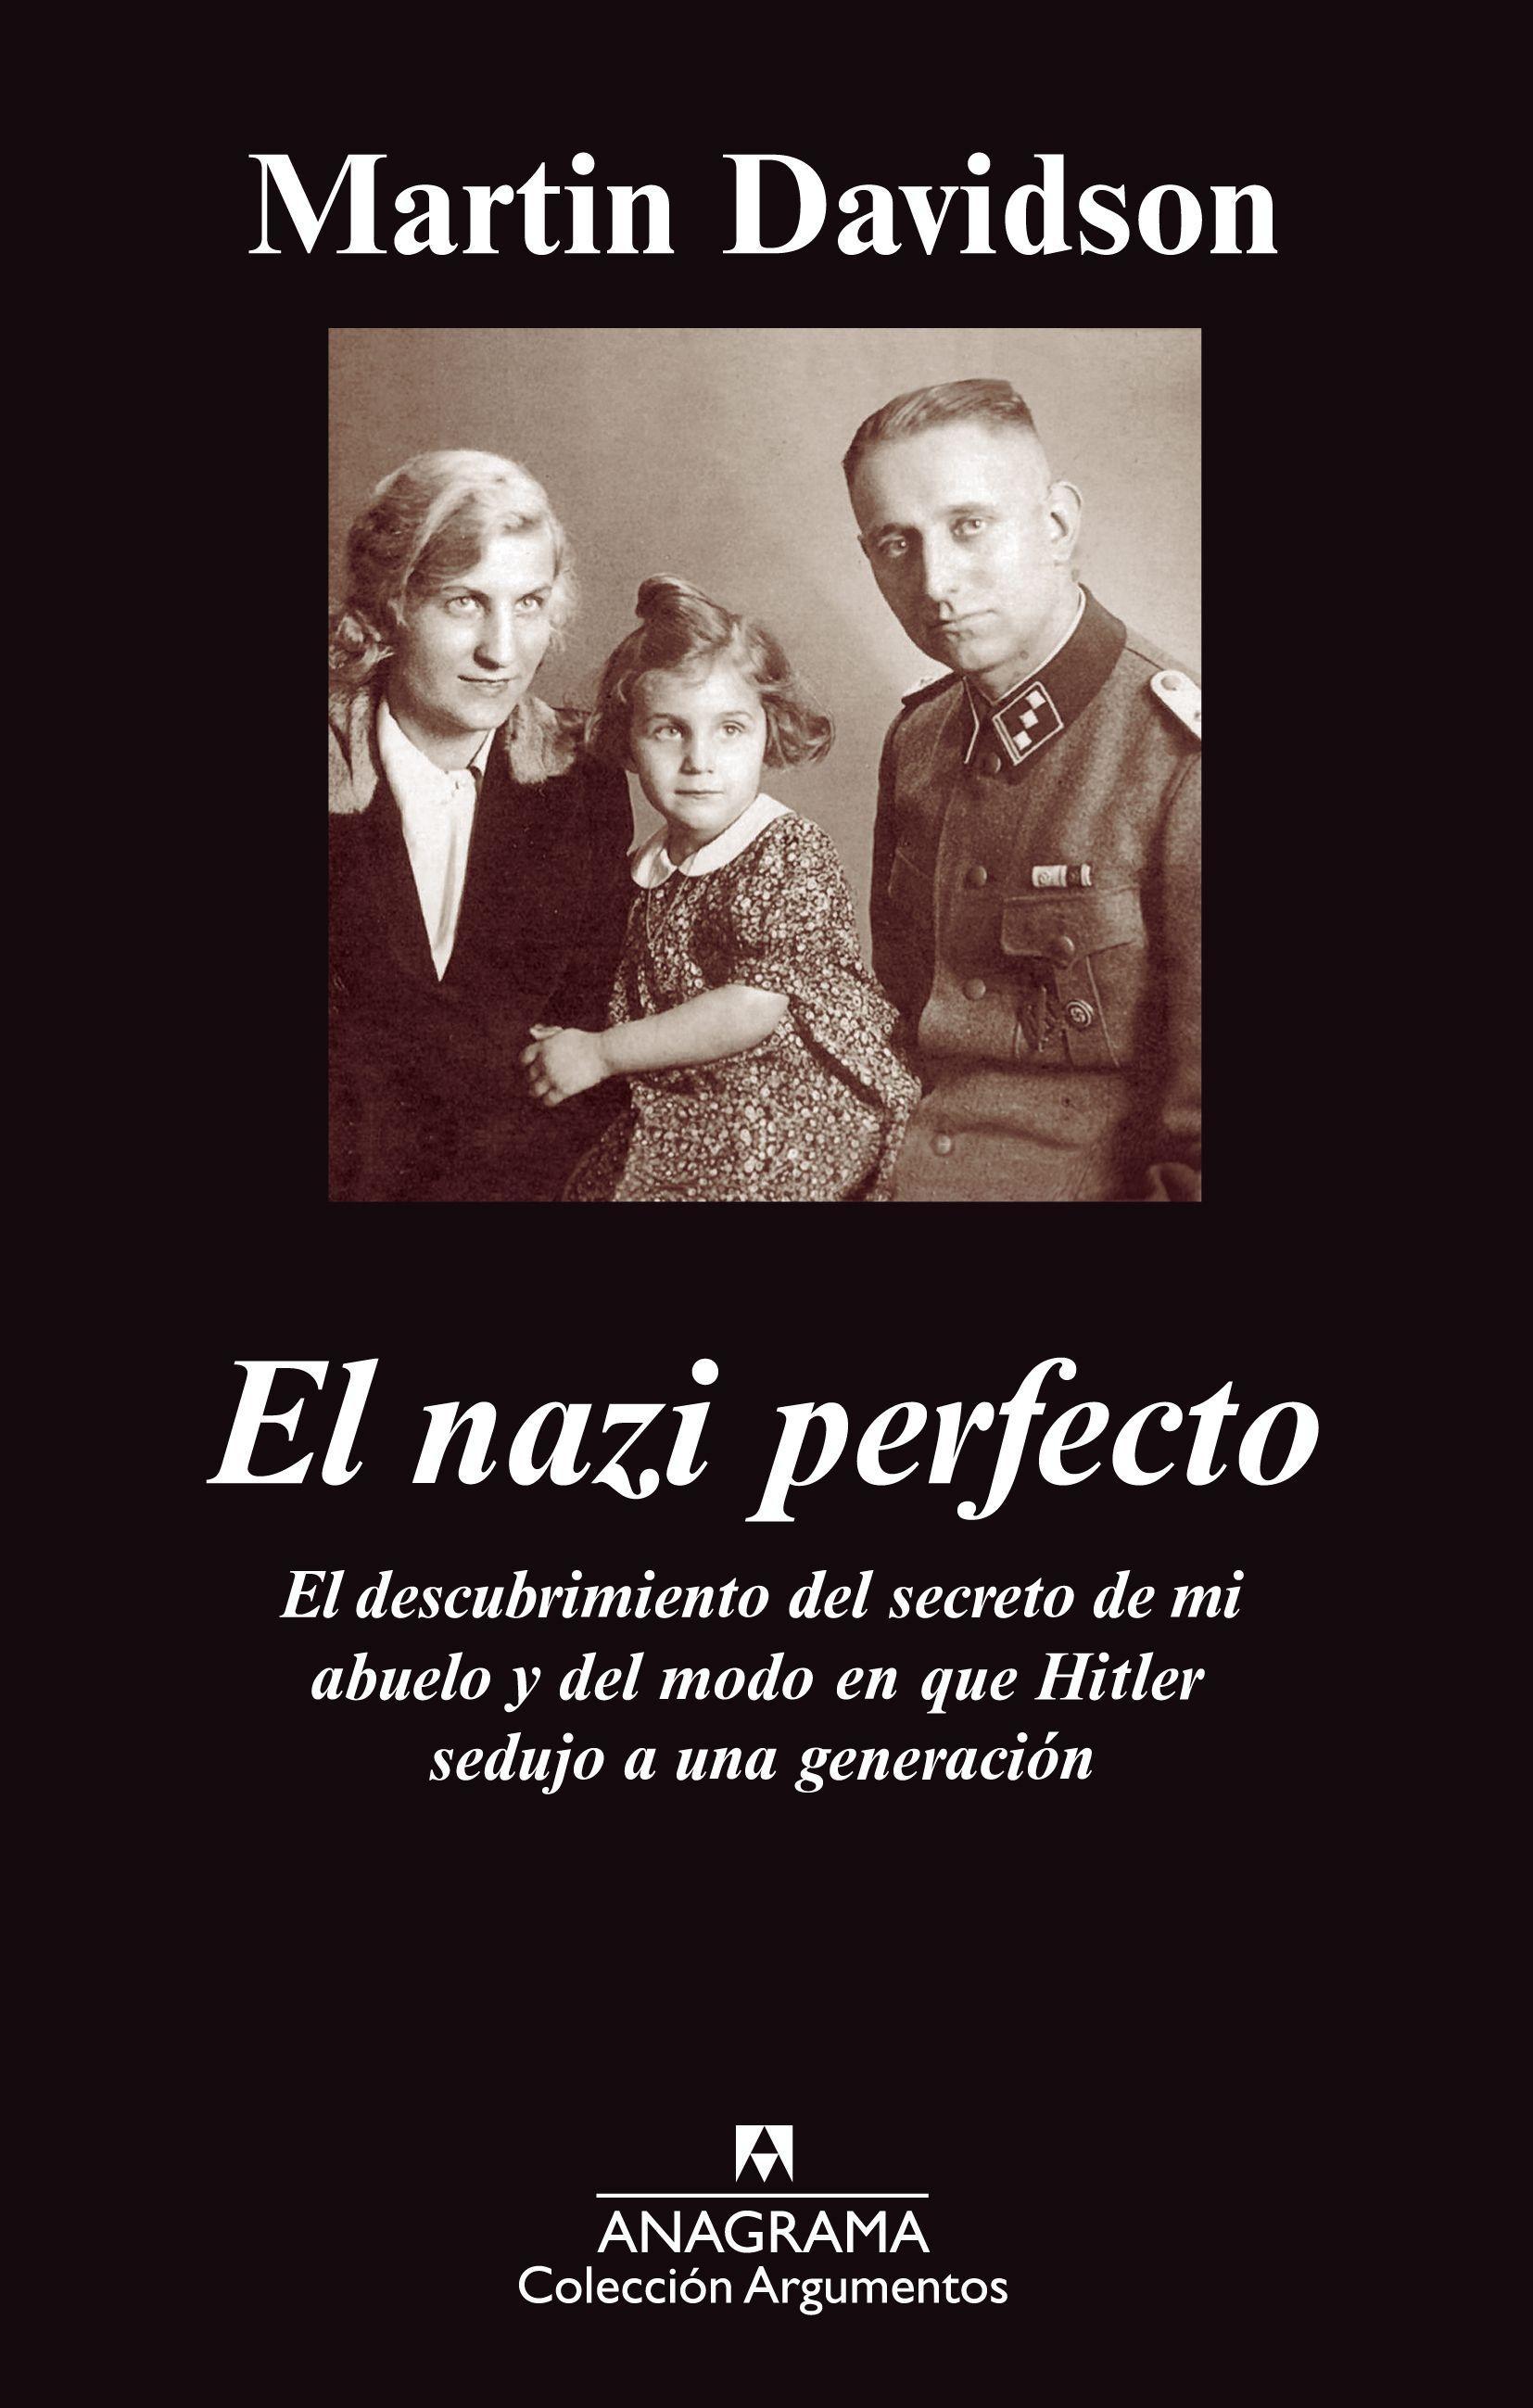 Nazi Perfecto, El "El descubrimiento del secreto de mi abuelo y del modo en que Hit"